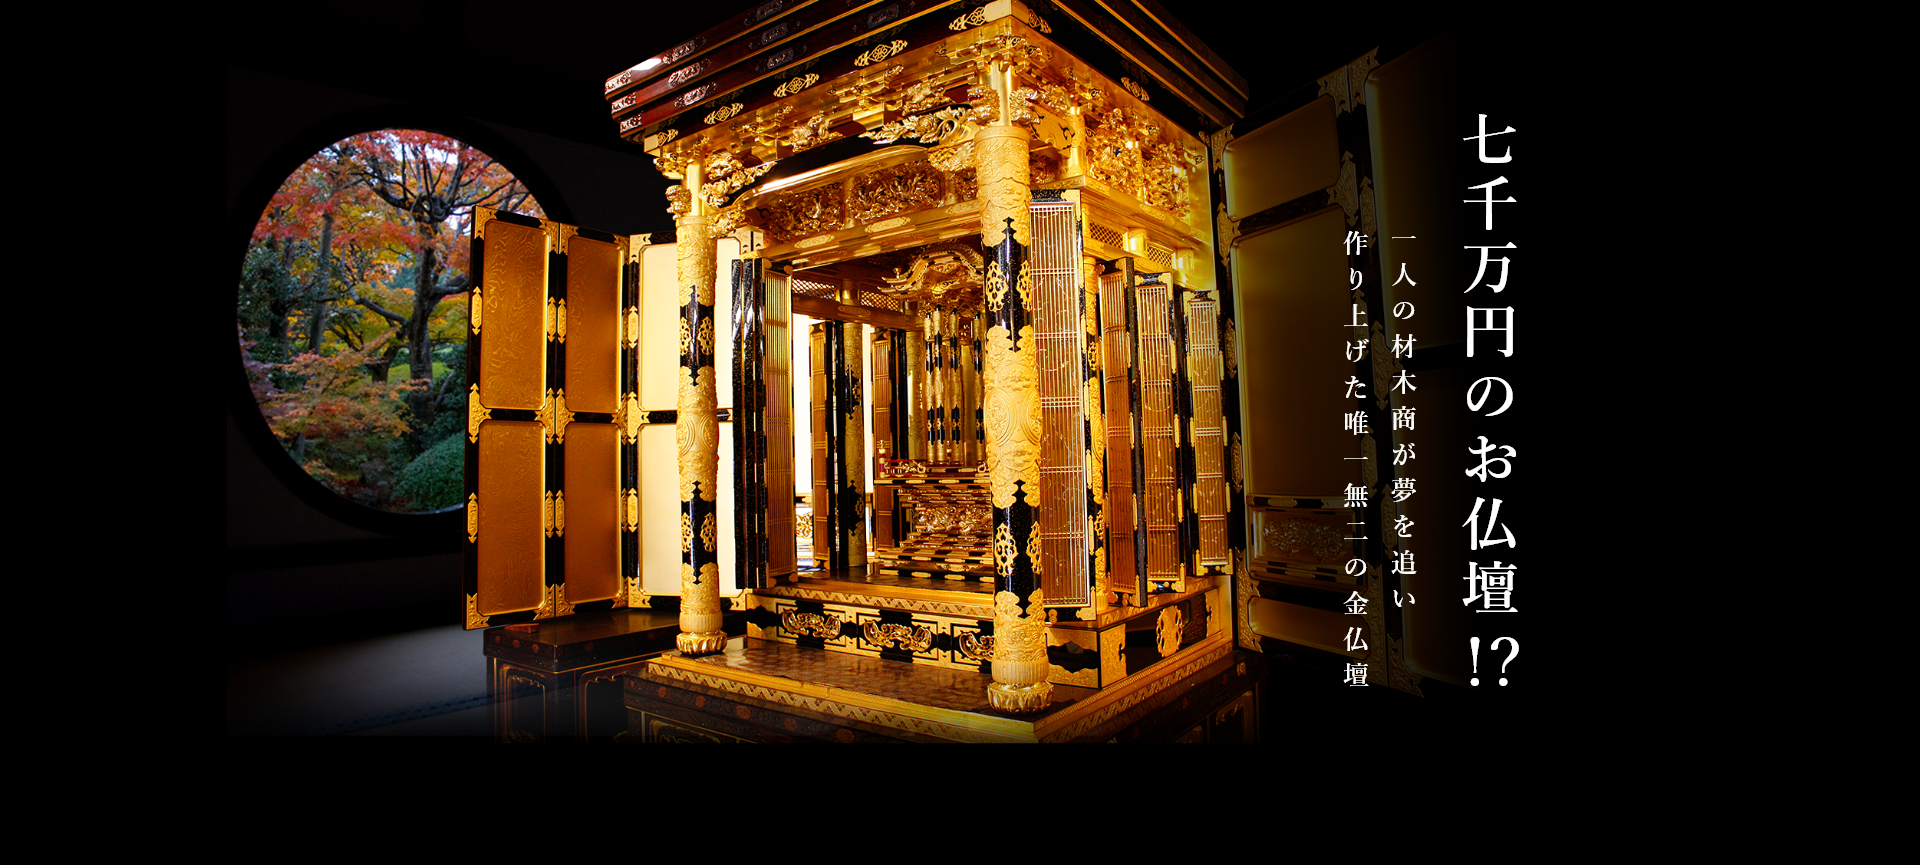  七千万円のお仏壇!? 一人の材木商が夢を追い作り上げた唯一無二の金仏壇